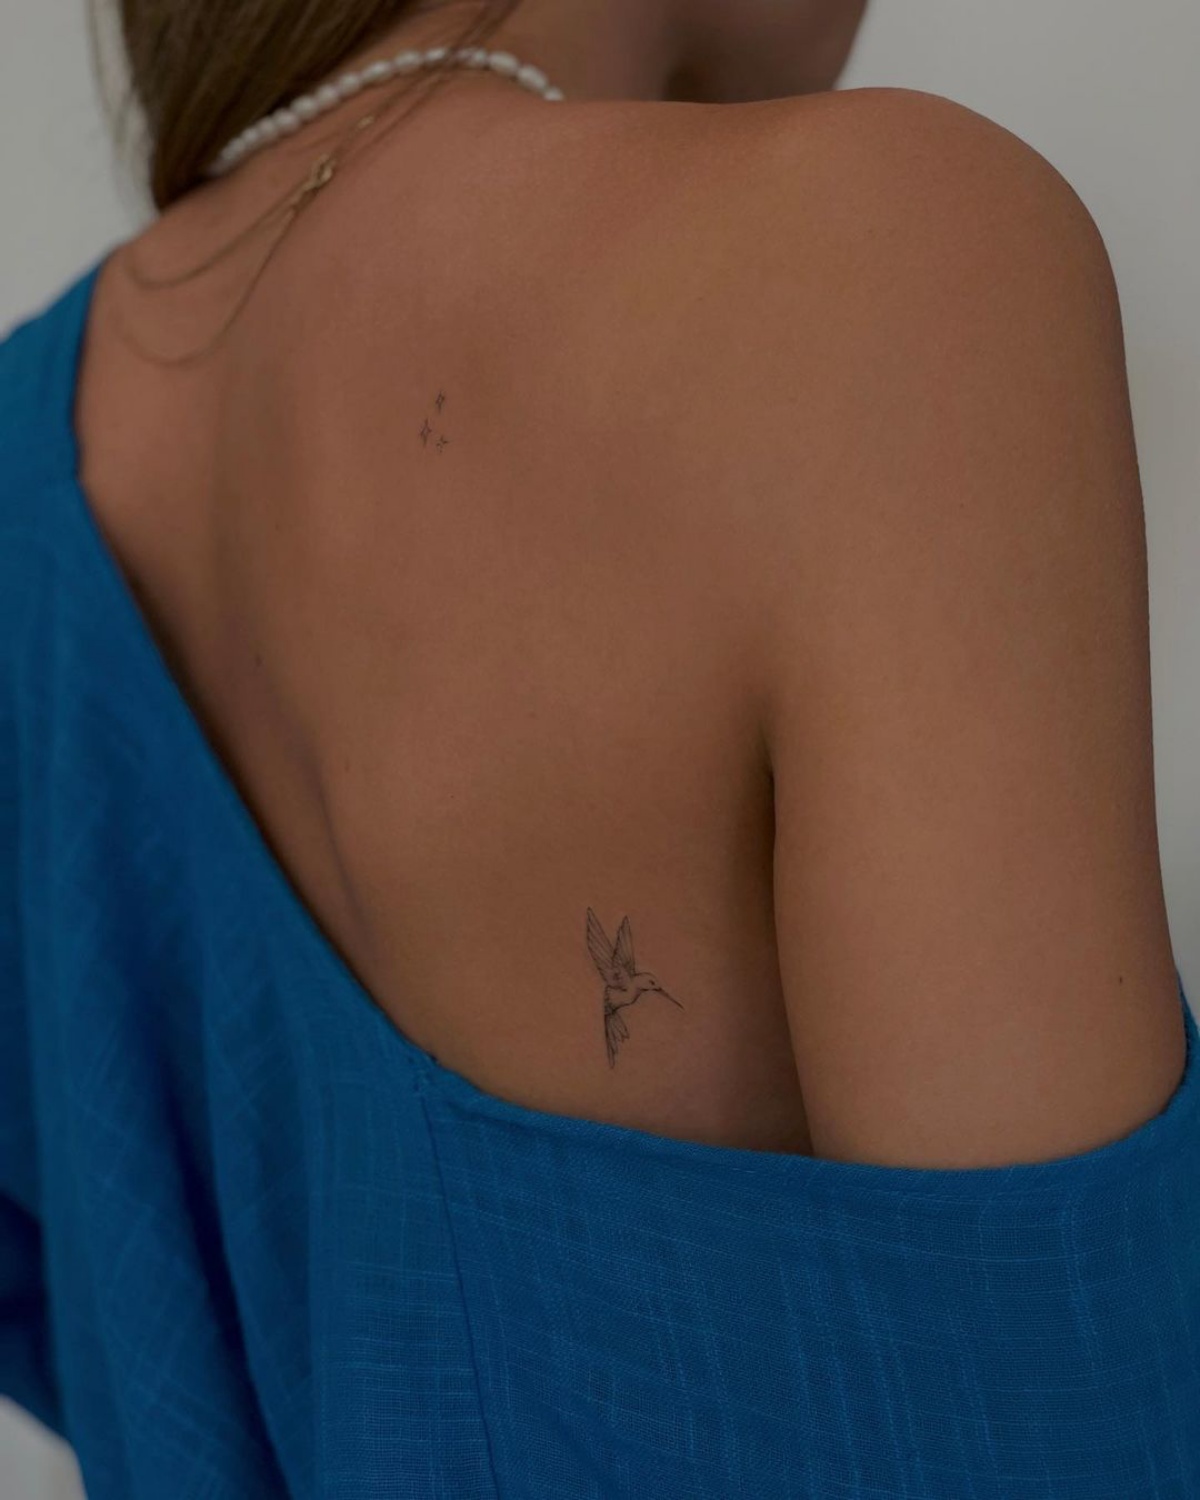 piccolo tattoo schiena donna disegno uccello